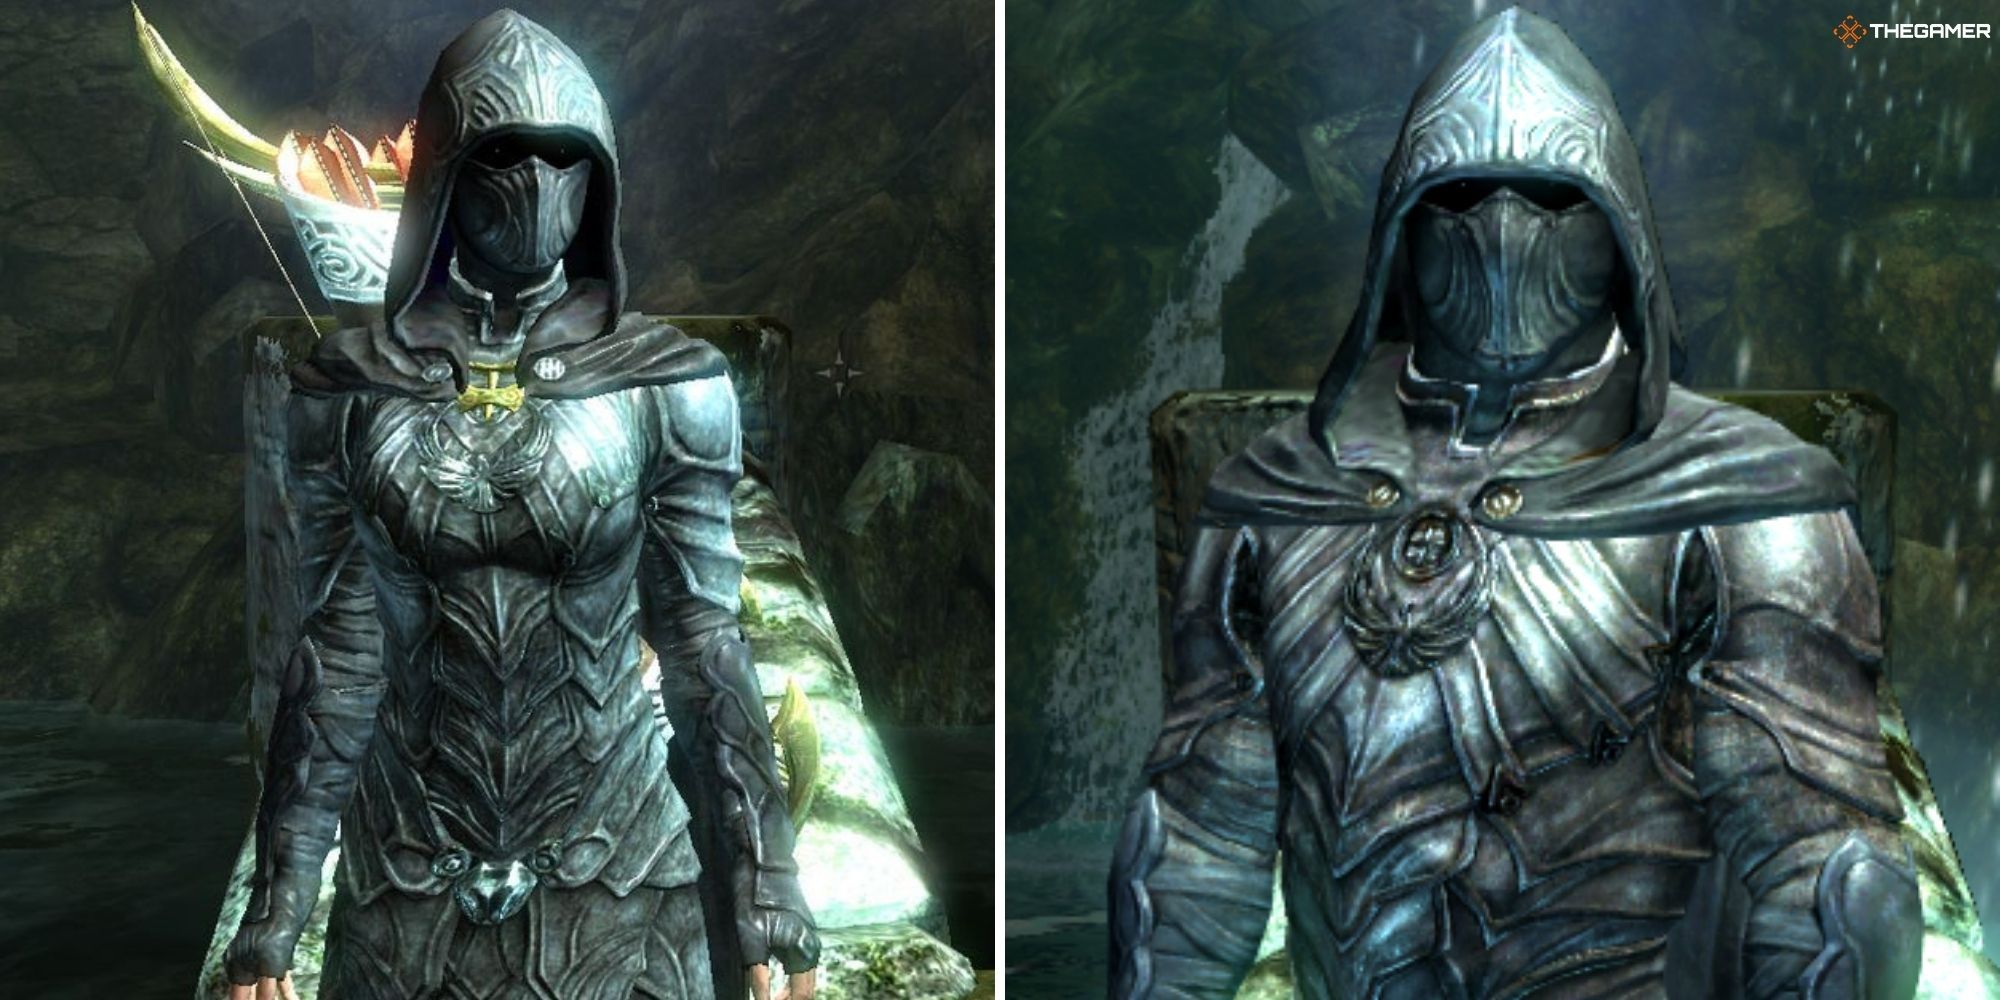 Skyrim - Nightingale Armor worn by the player, split image